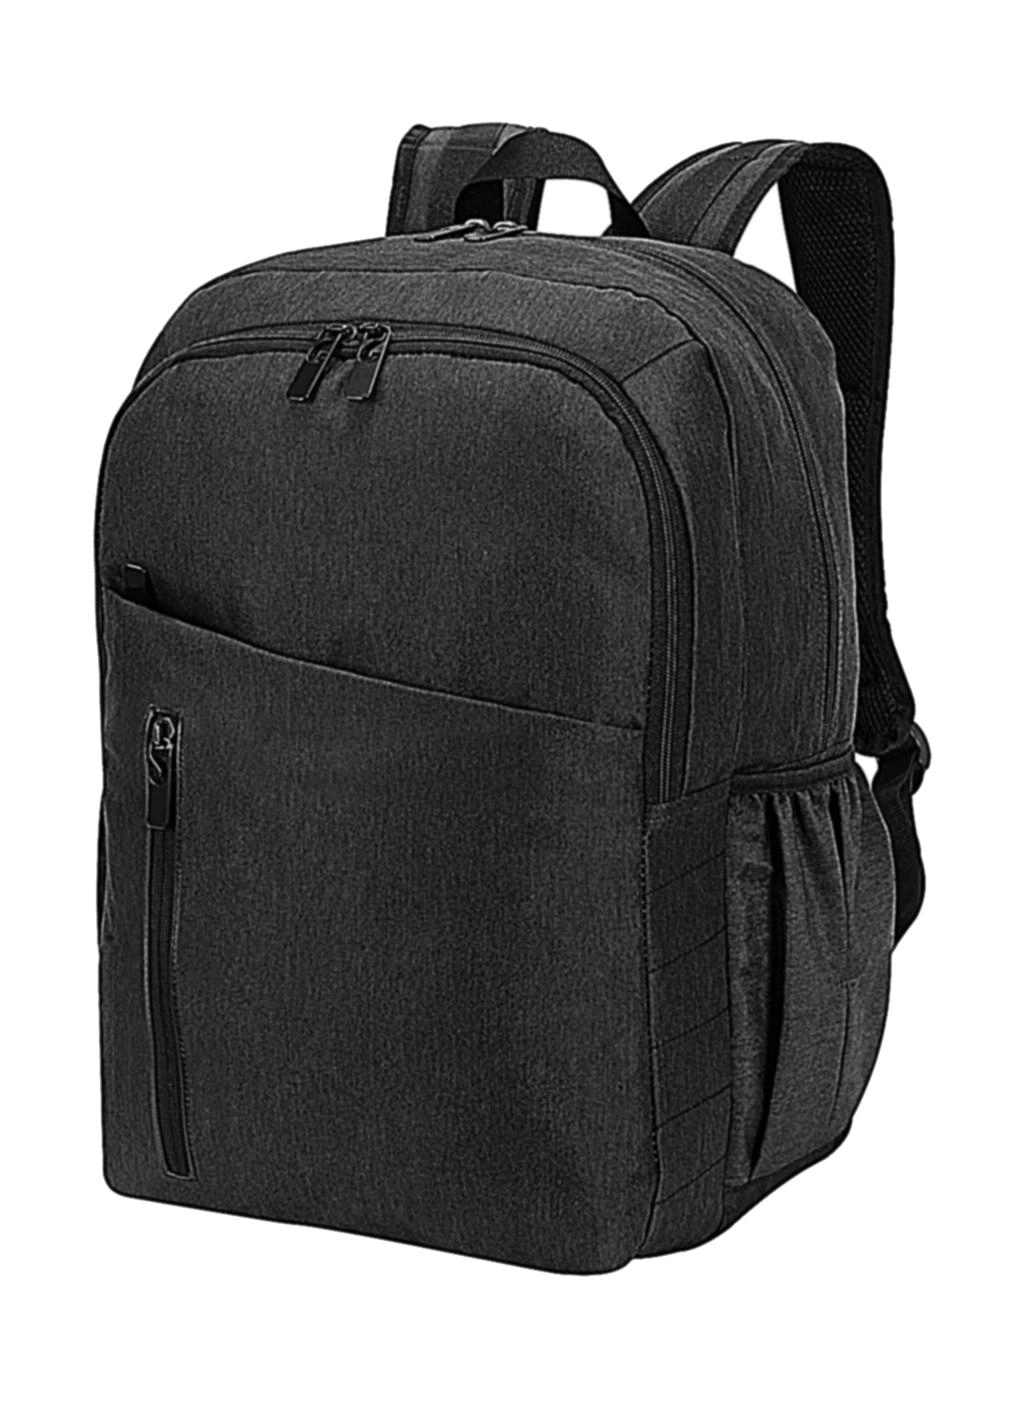 Birmingham Capacity 30L Backpack zum Besticken und Bedrucken mit Ihren Logo, Schriftzug oder Motiv.